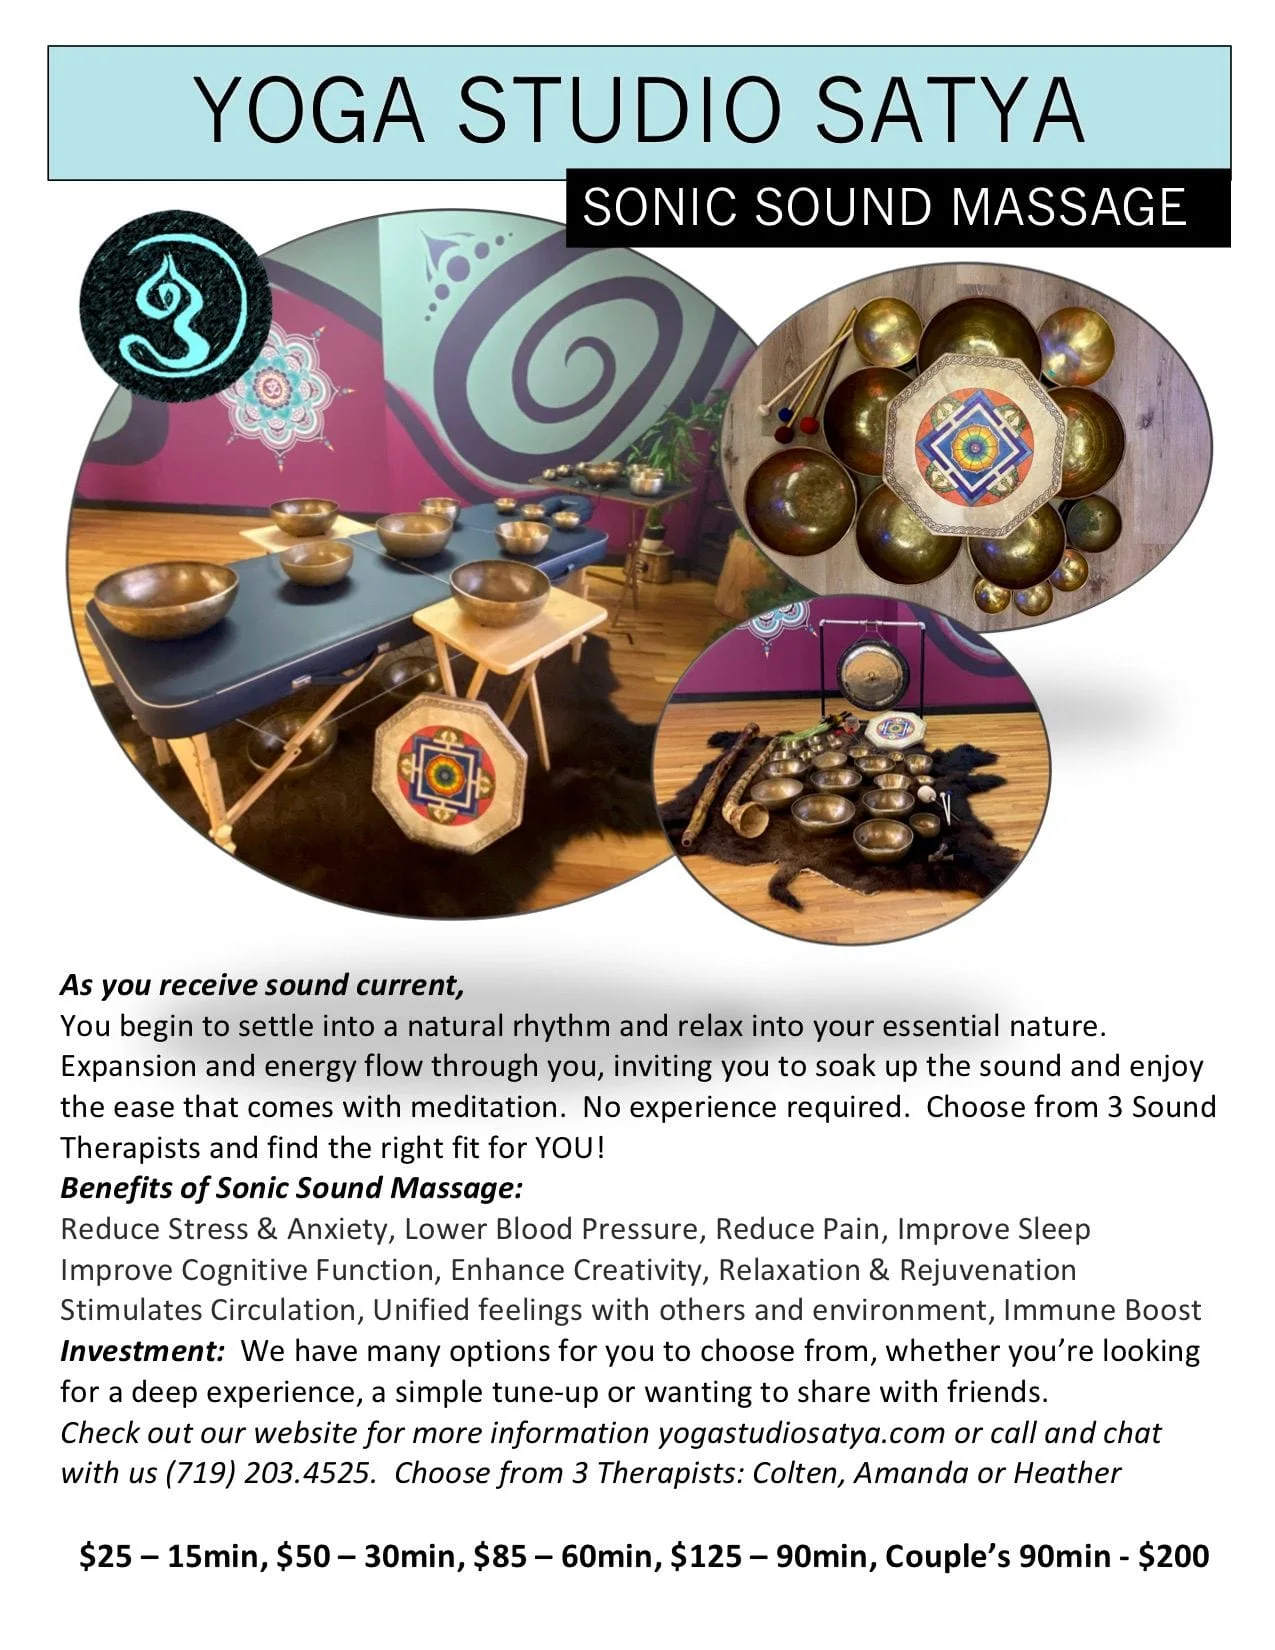 Sonic Sound Massage